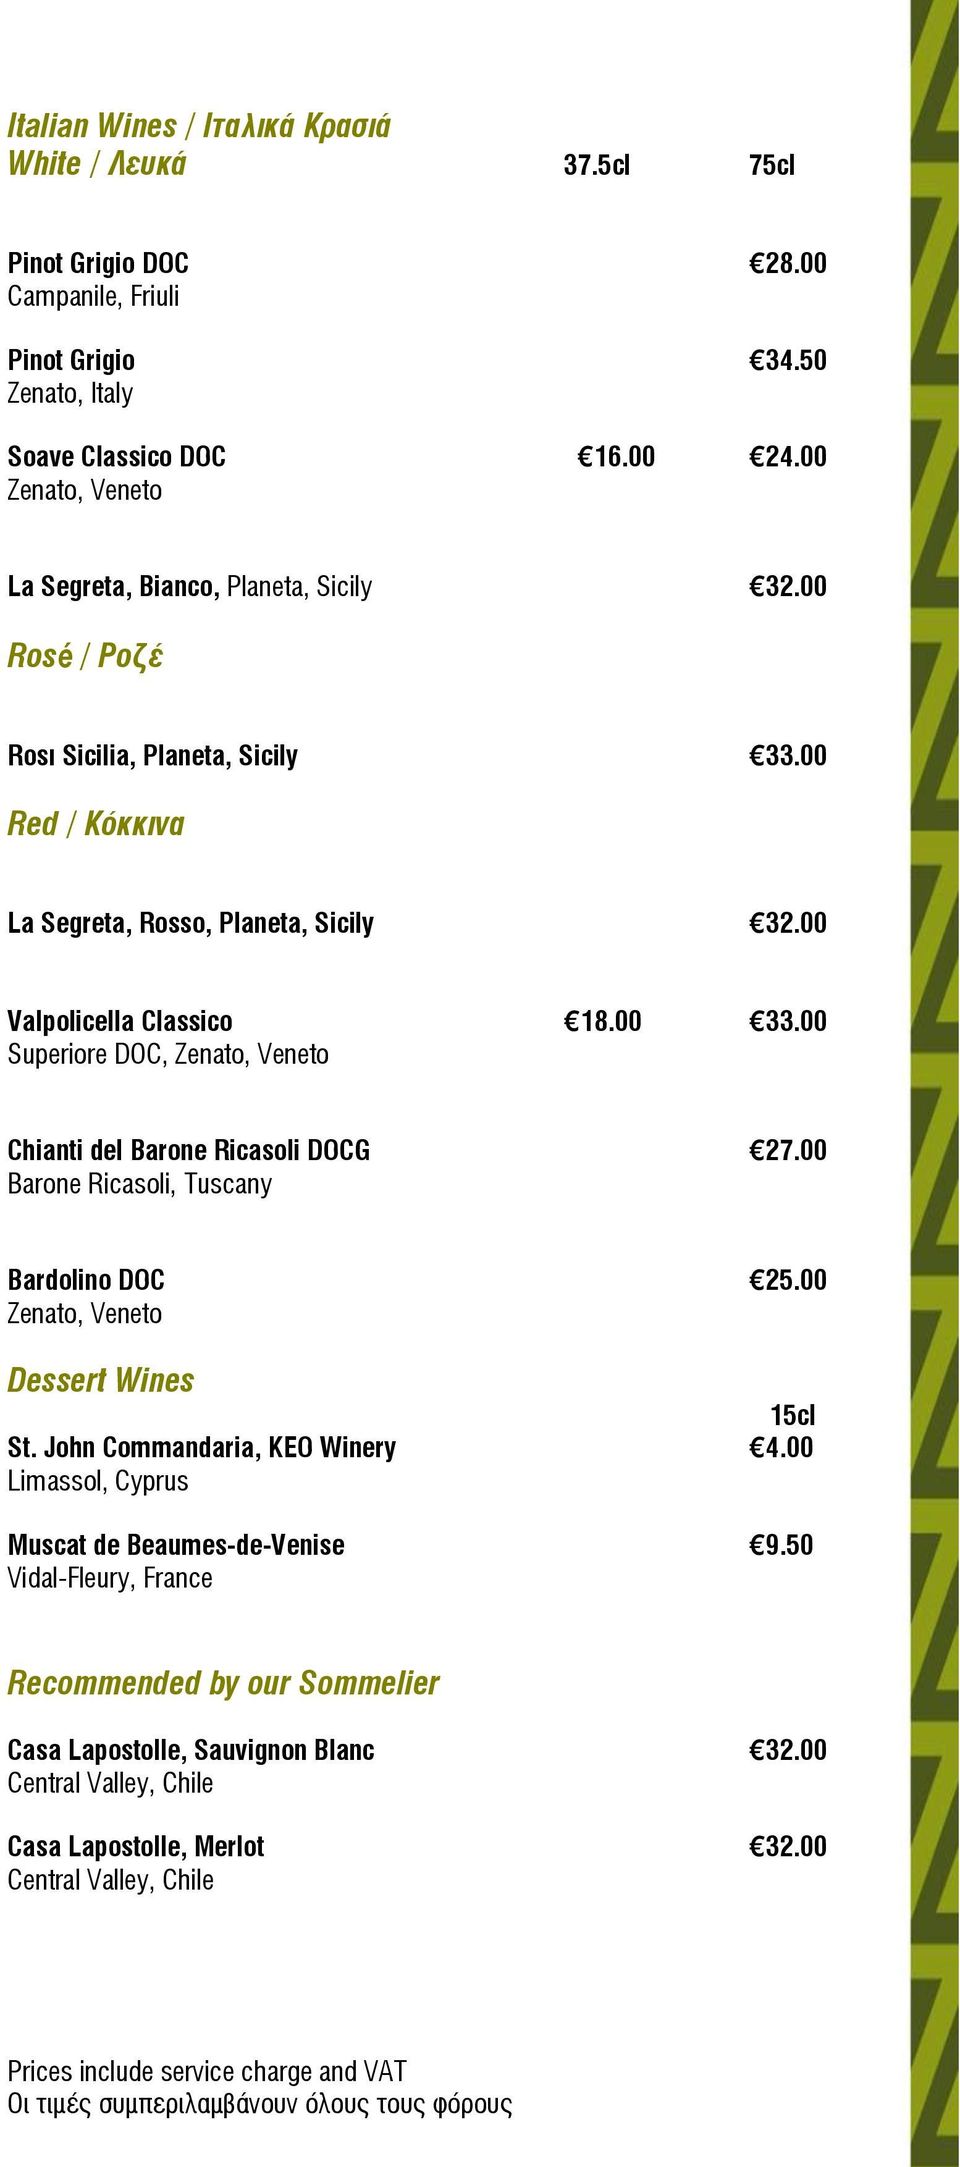 00 33.00 Superiore DOC, Zenato, Veneto Chianti del Barone Ricasoli DOCG 27.00 Barone Ricasoli, Tuscany Bardolino DOC 25.00 Zenato, Veneto Dessert Wines 15cl St.